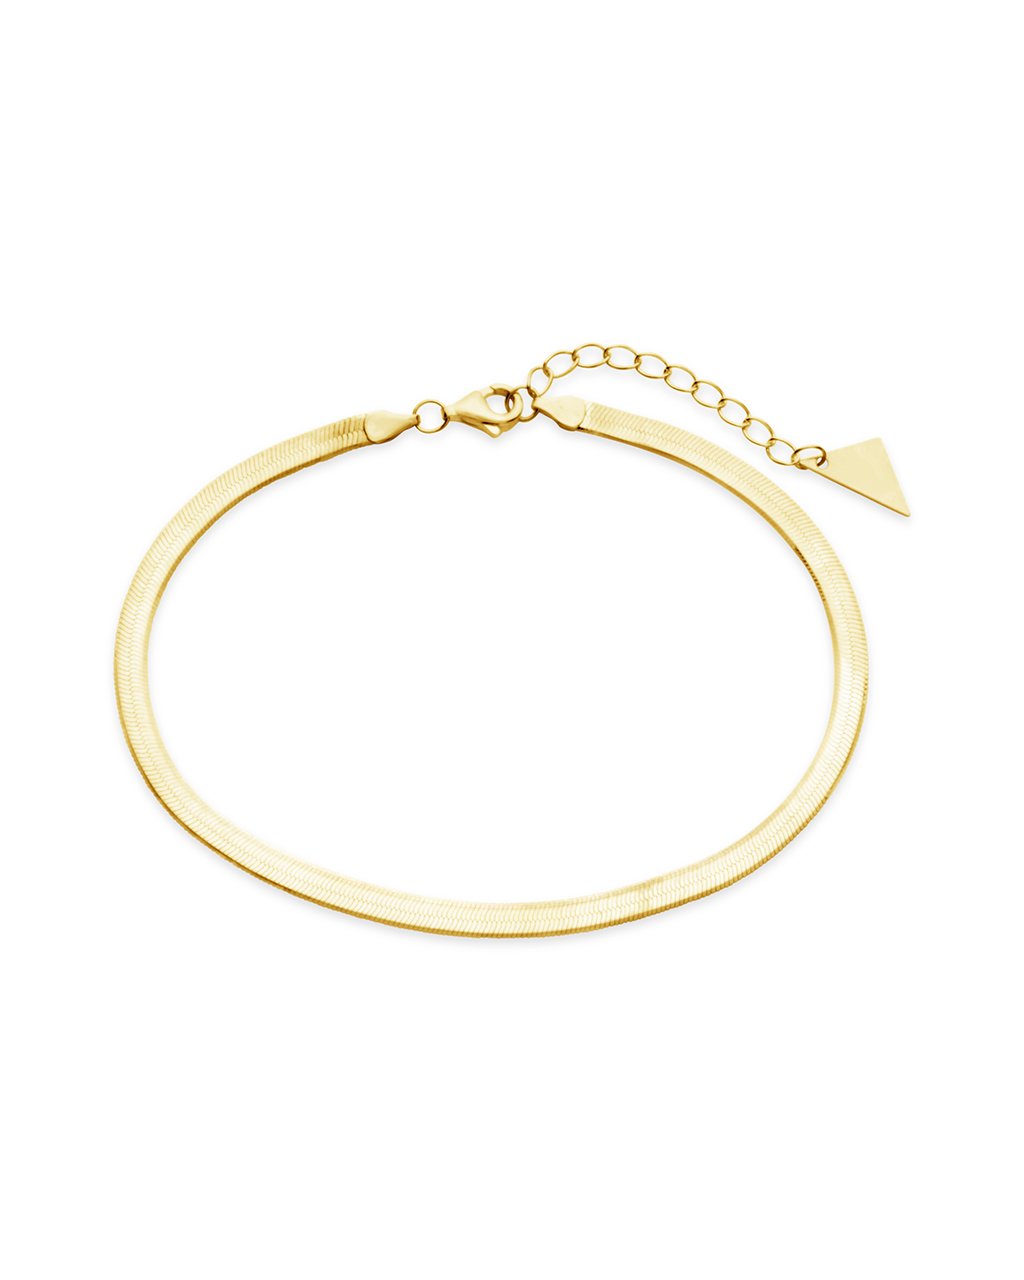 Herringbone Chain Bracelet Bracelet Sterling Forever Gold 